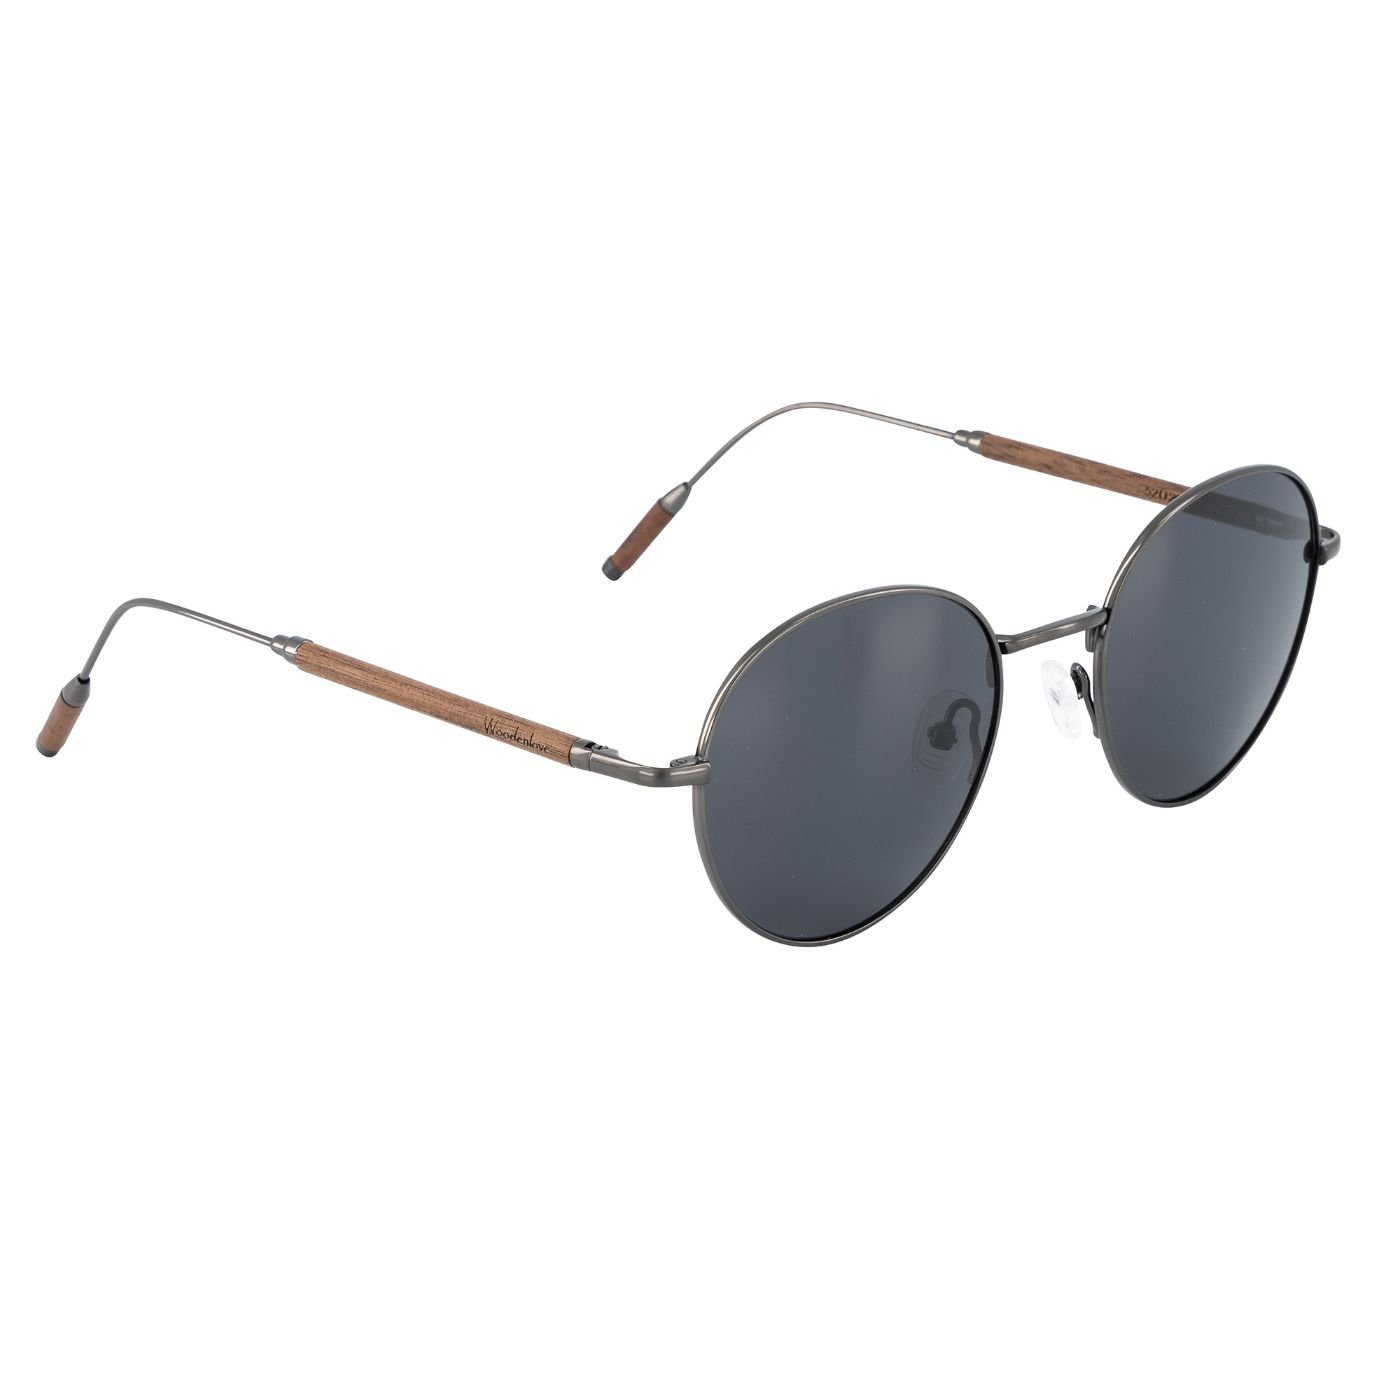 Woodenlove Sonnenbrille Titan (Set, Premium Holz-Sonnenbrille mit Brillenputztuch und faltbarem Etui) Titanbügel mit Holzelementen Walnuss